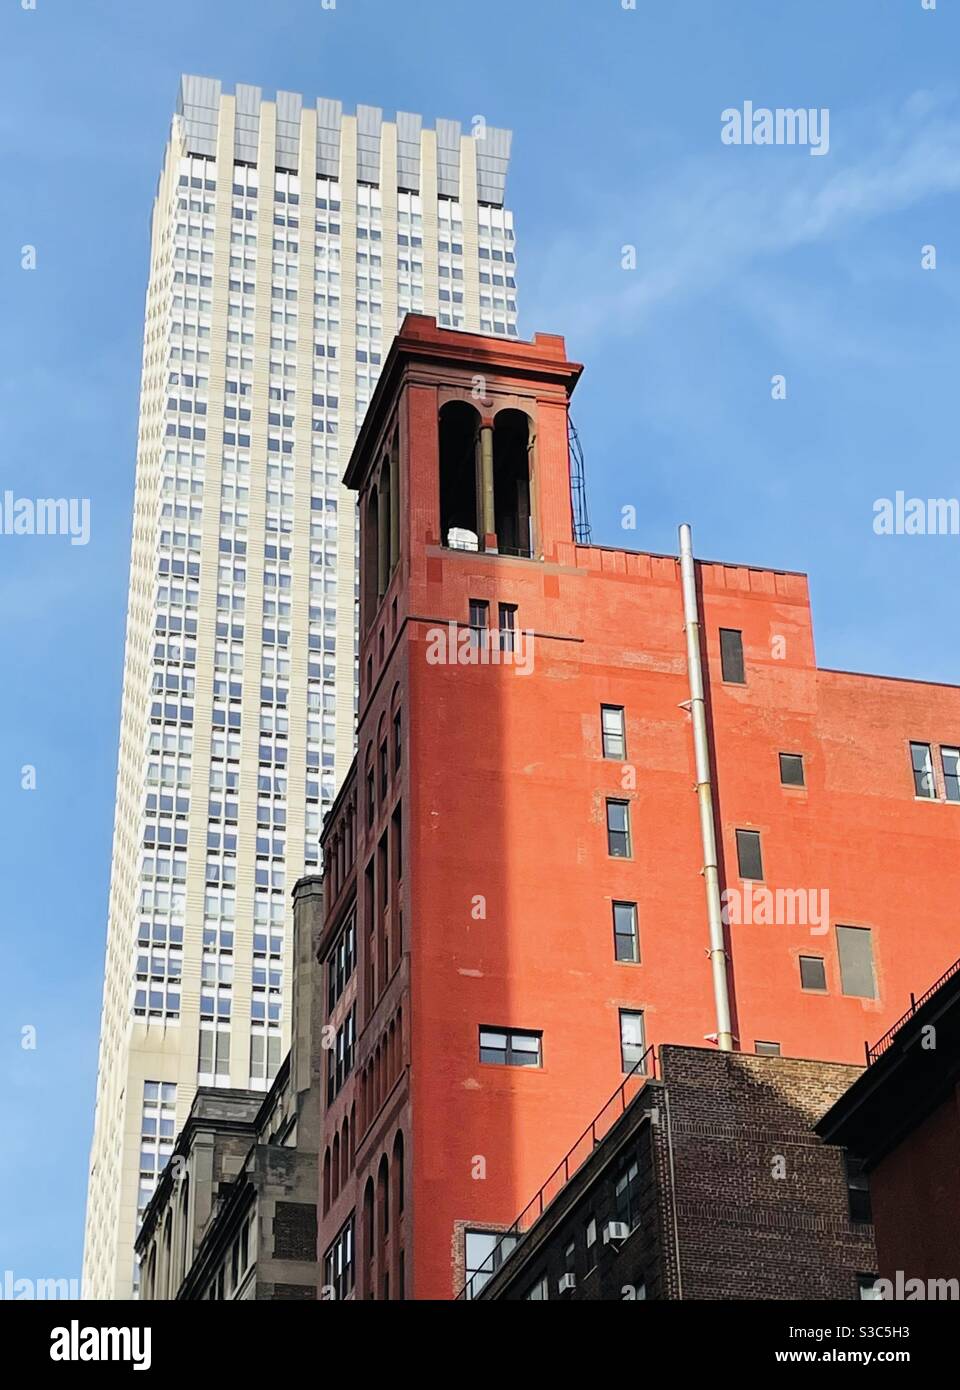 Il sole del pomeriggio esalta le colorate sfumature dei grattacieli nel centro di Manhattan e mette in risalto l'edificio del condominio Morgan Lofts in mattoni rossi, 11 East 35th Street vicino a Madison Ave costruito nel 1912. Foto Stock